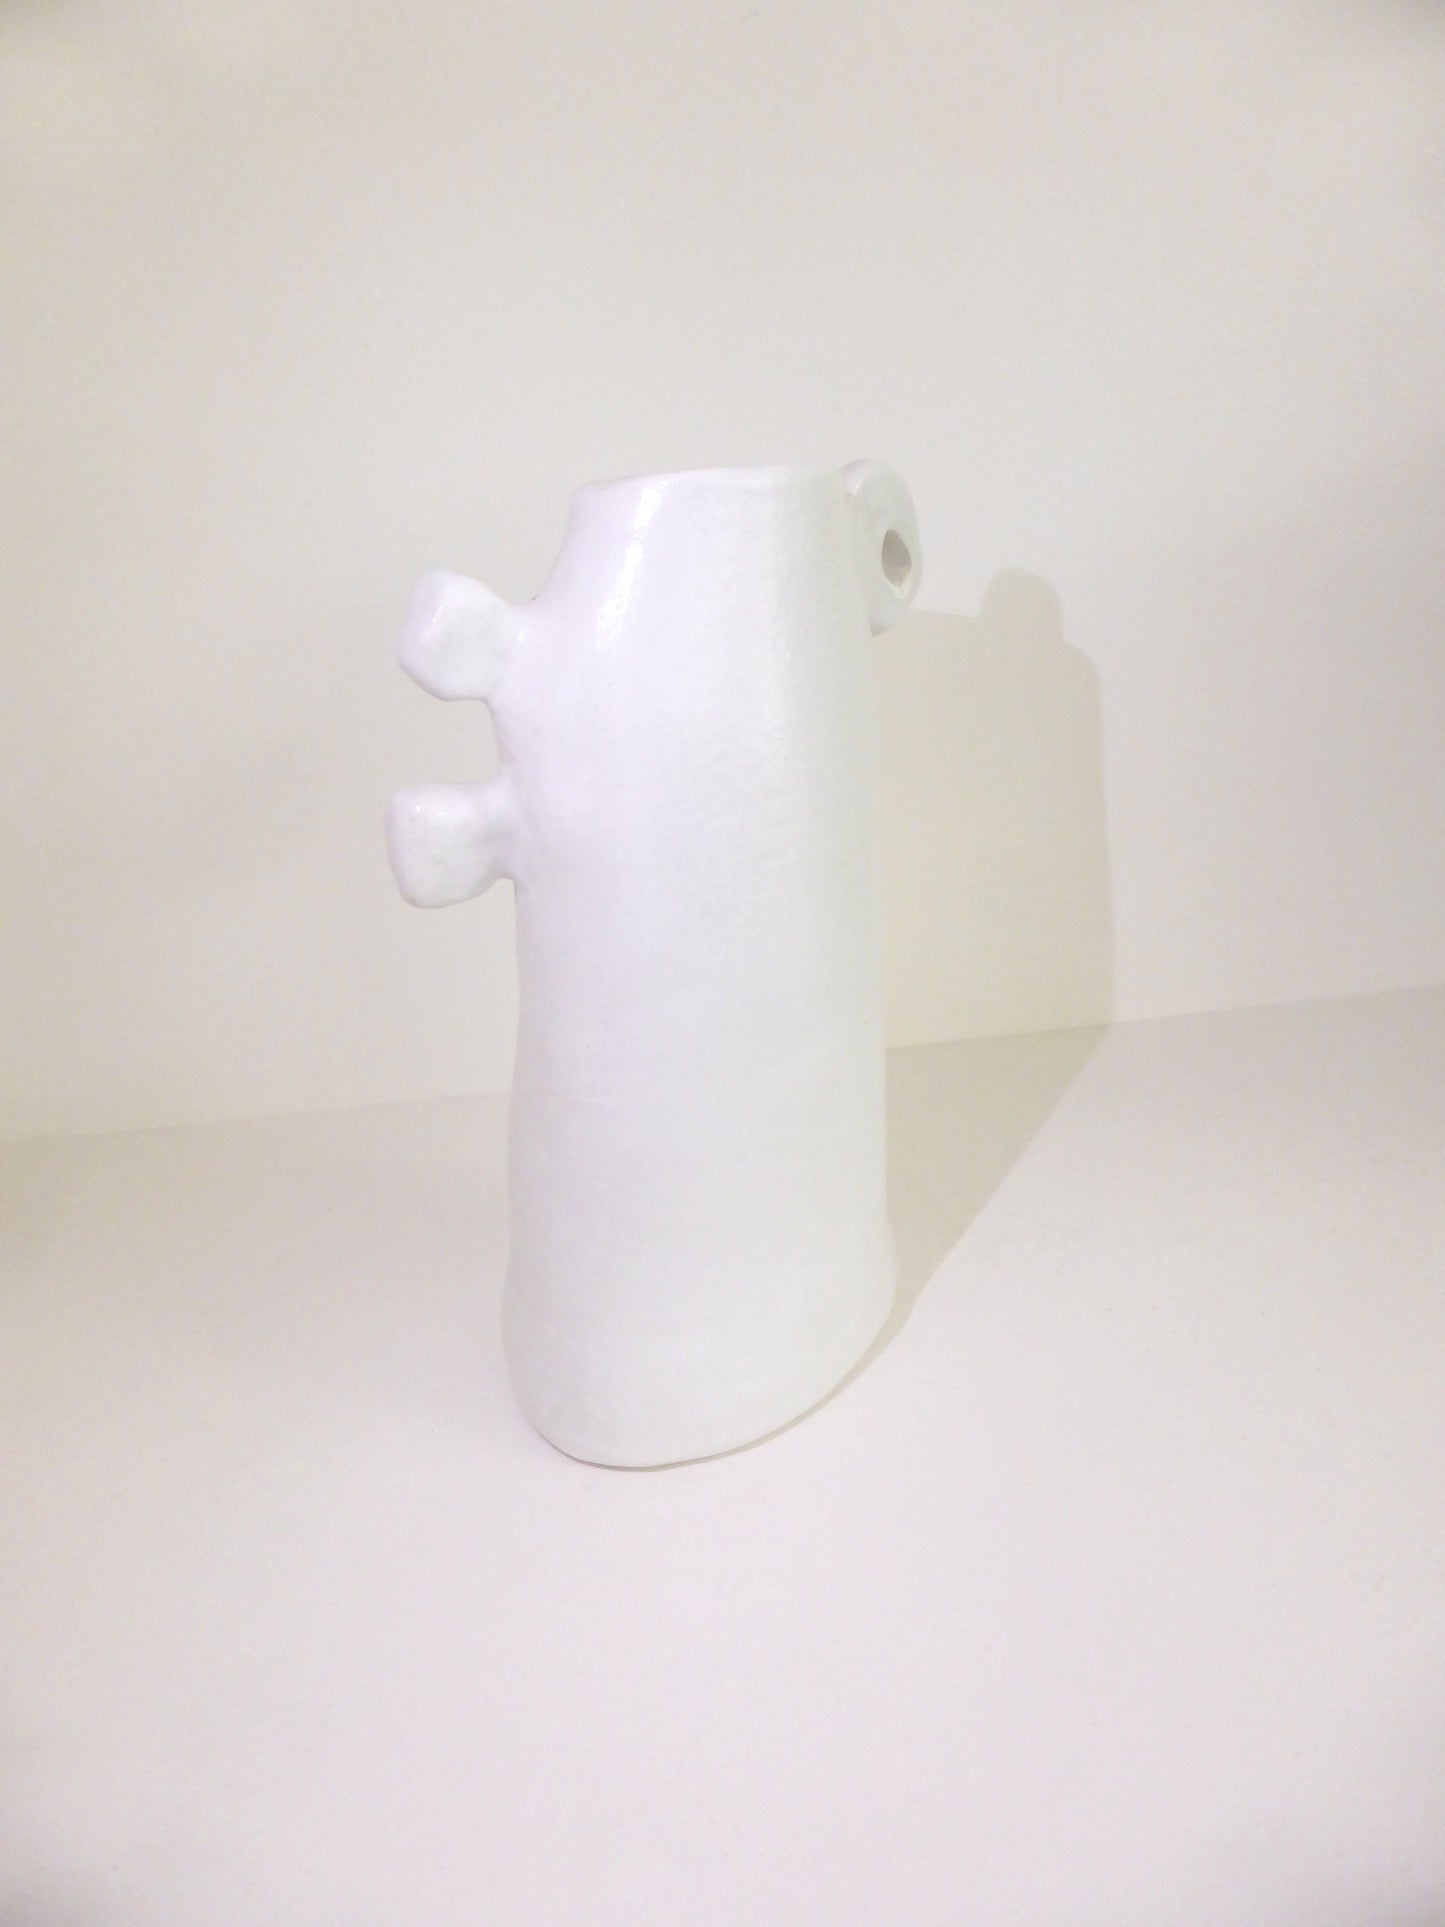 Organic Form Vase - Zed White